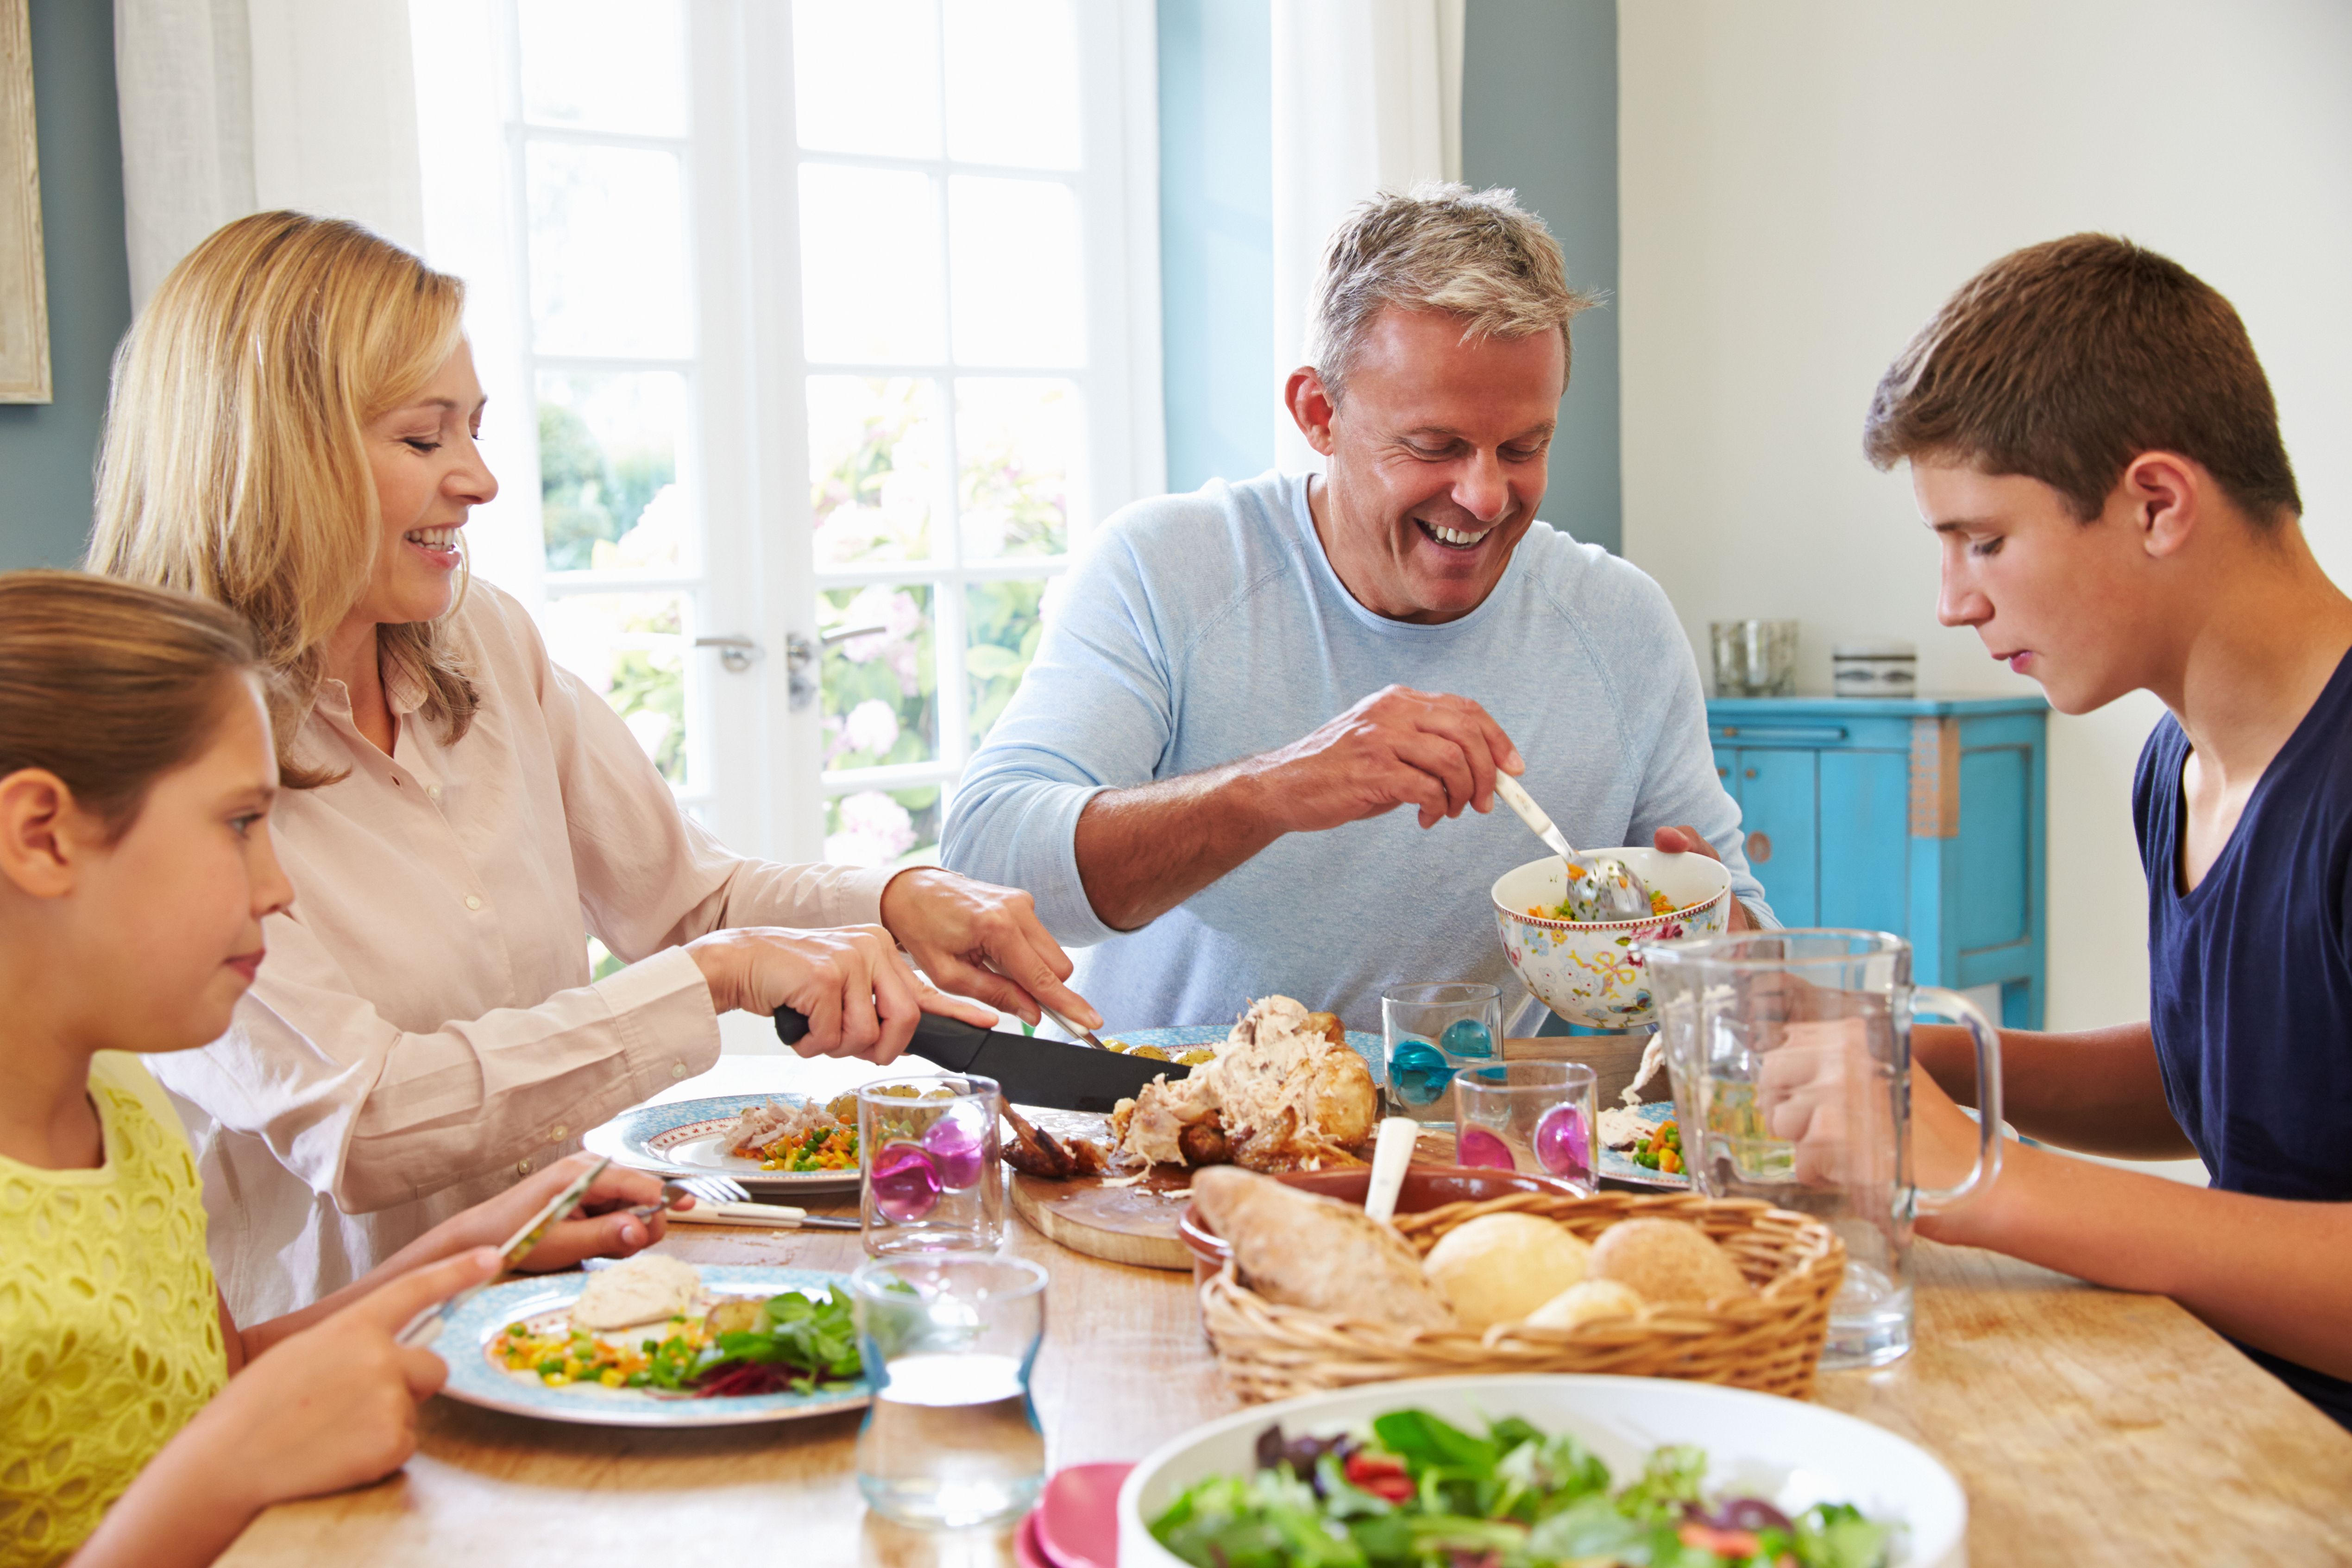 A family having dinner. | Source: Shutterstock